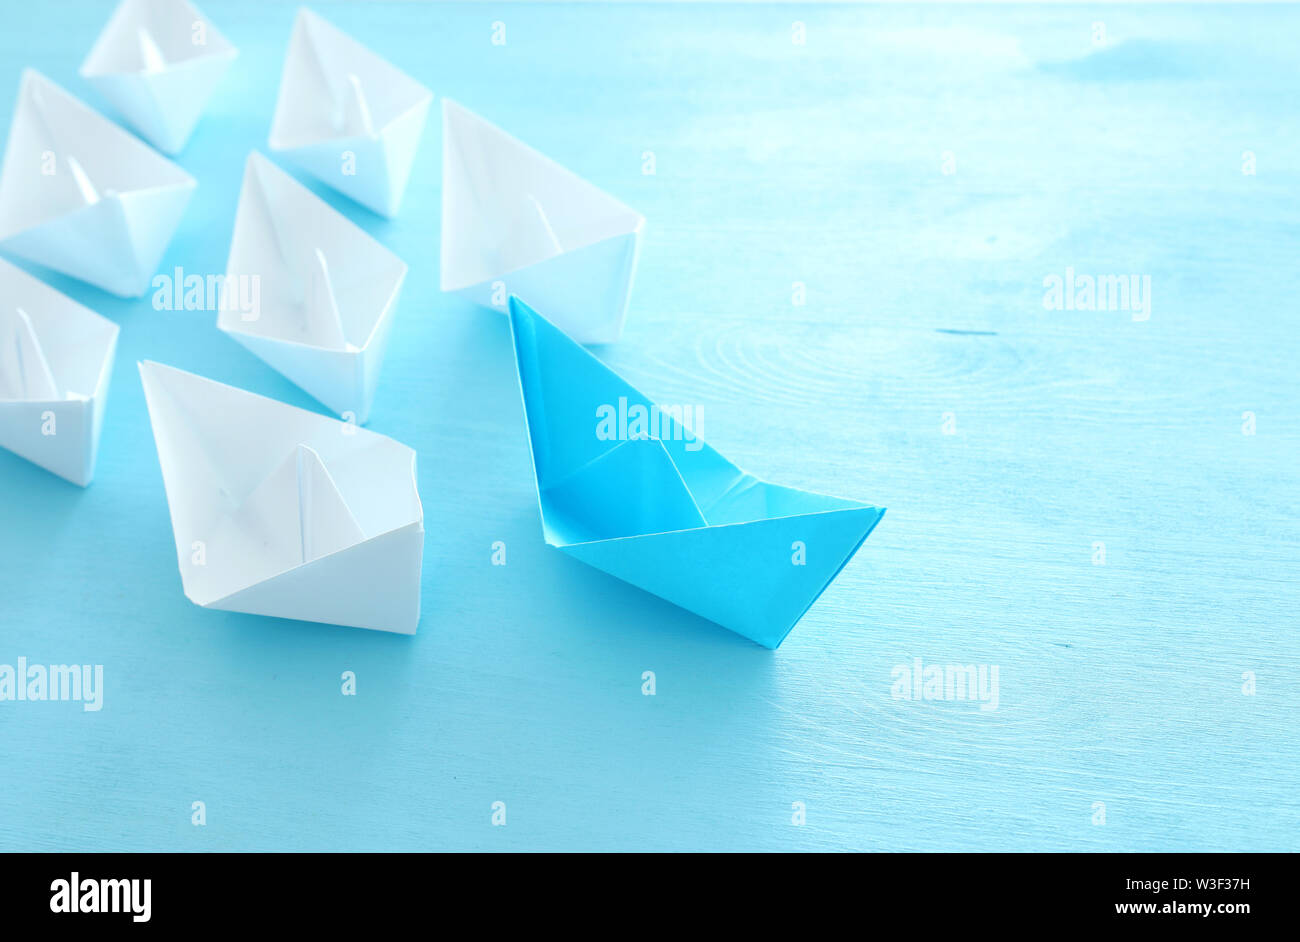 Business. Führung Konzept Bild mit Papier Boote auf Blau Holz- Hintergrund. Ein Führer führen. Stockfoto